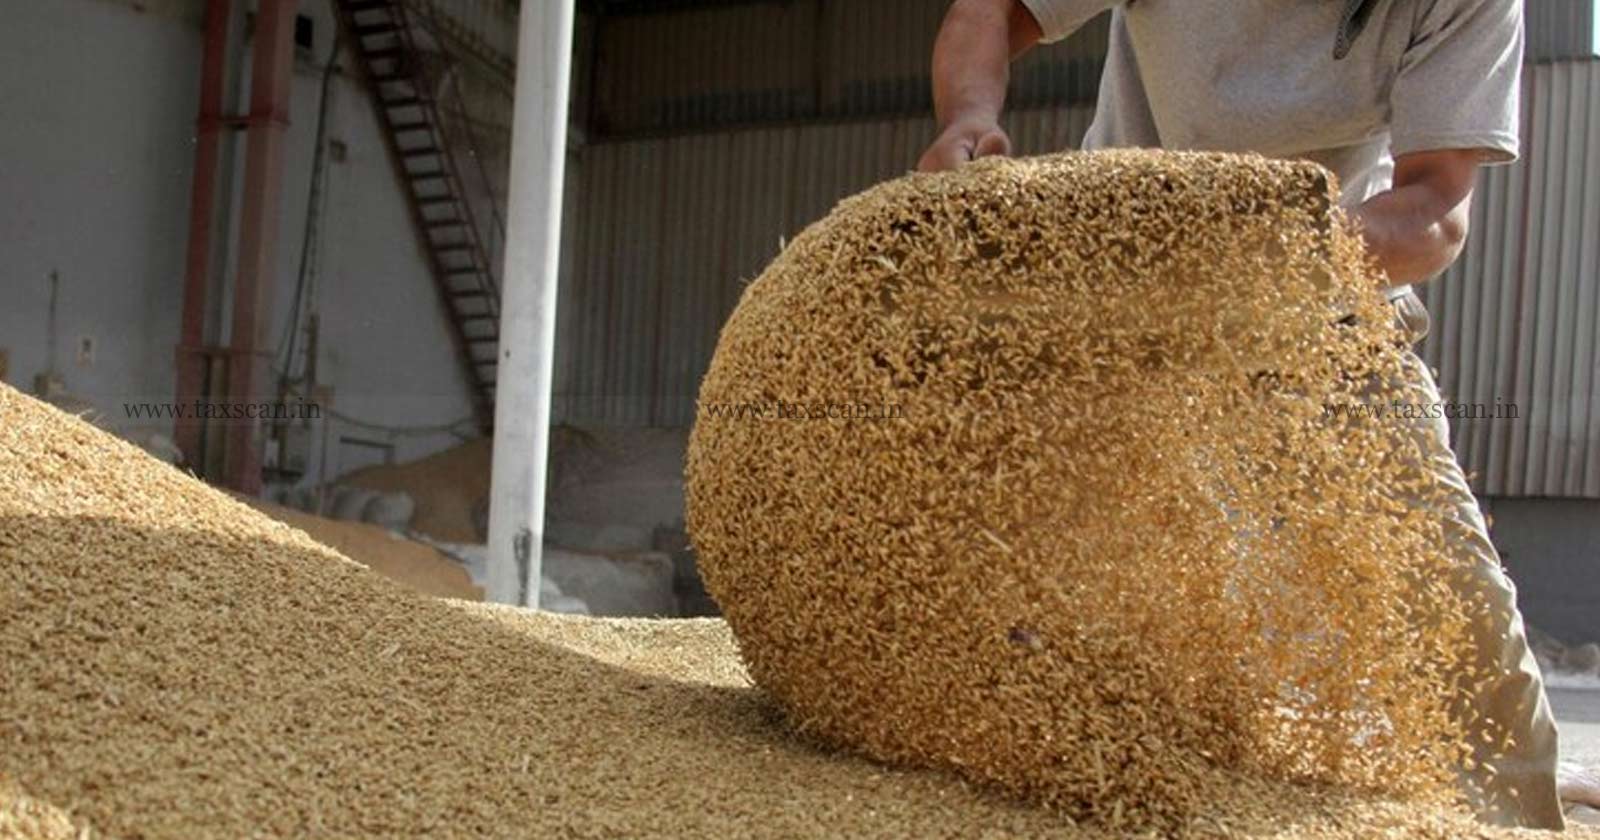 Milling of Wheat into Flour - Wheat into Flour - Govt - West Public Distribution System - GST Exemption - GST - AAR - taxscan